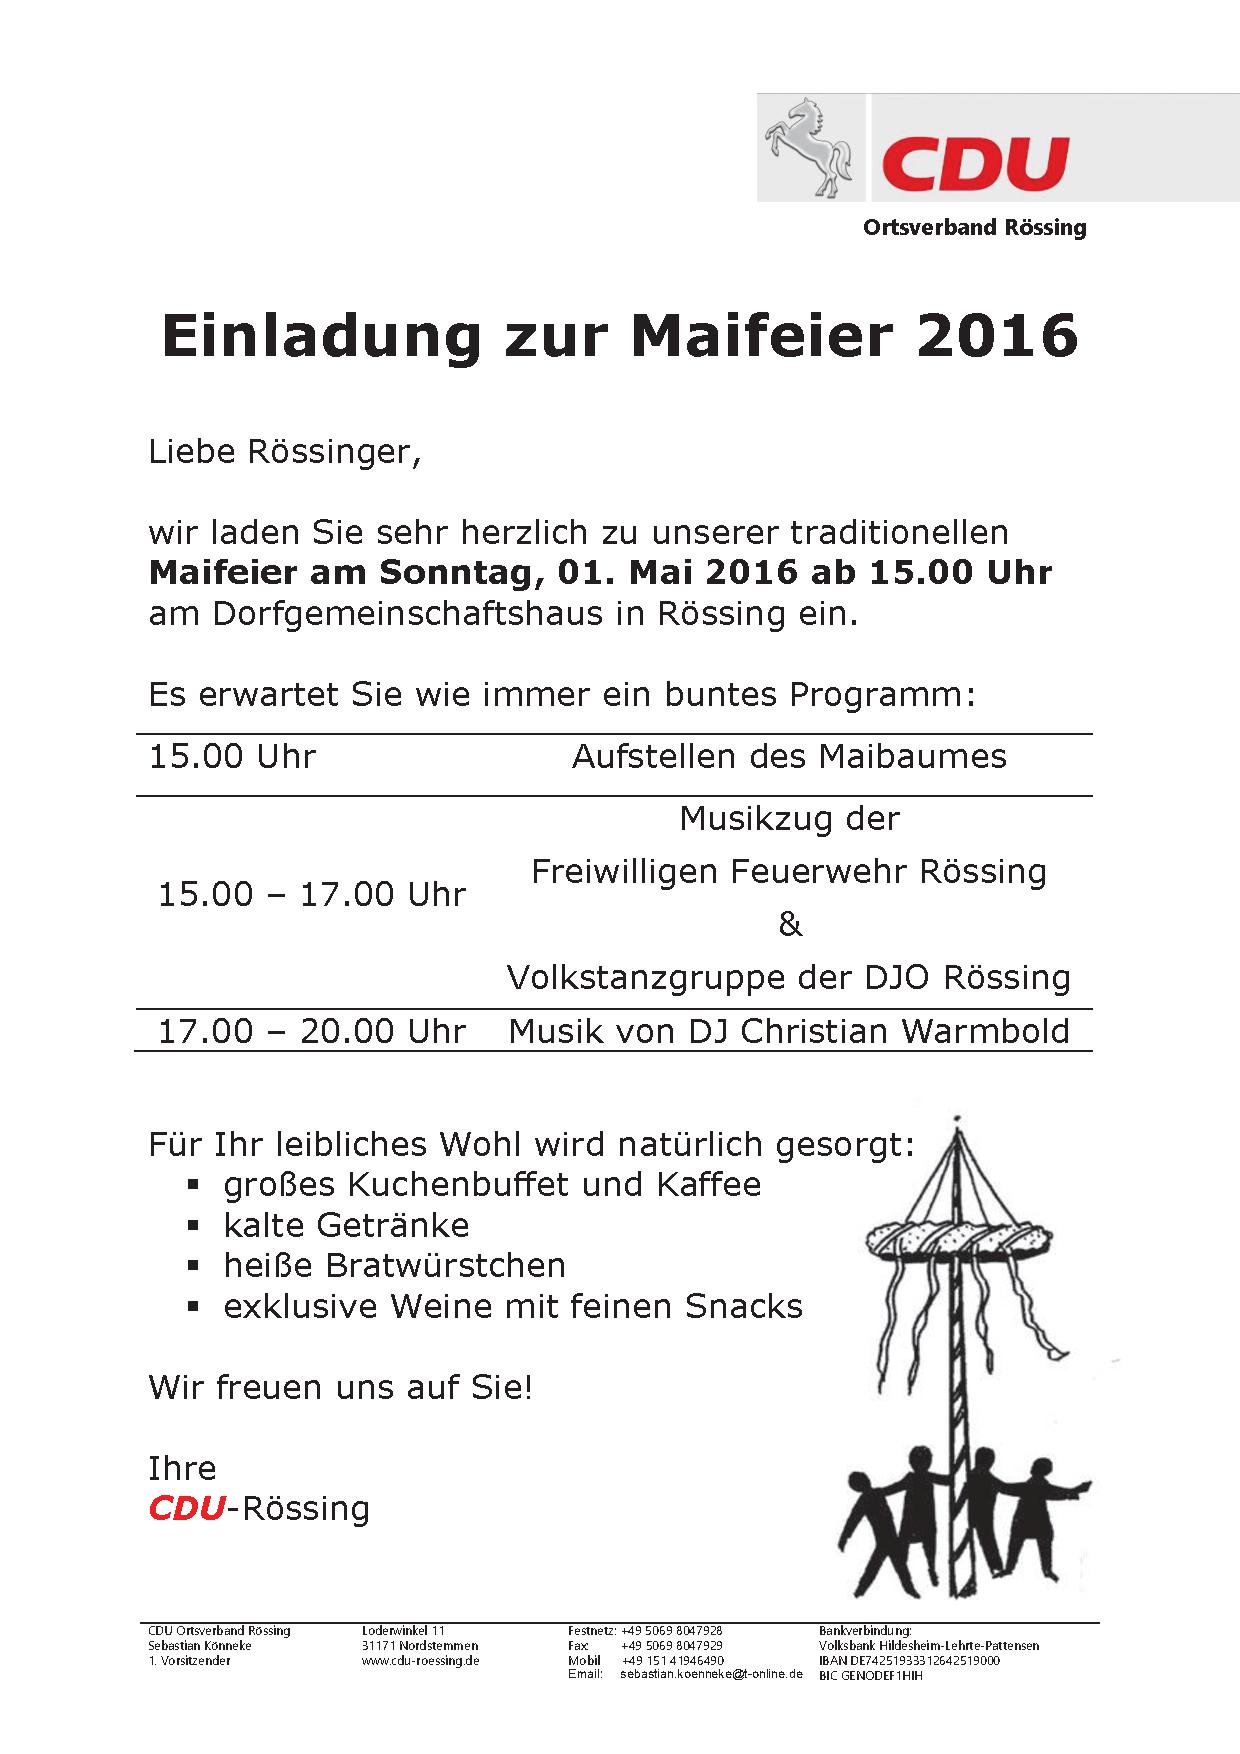 Einladung_Maifeier_2016_CDU_Rössing